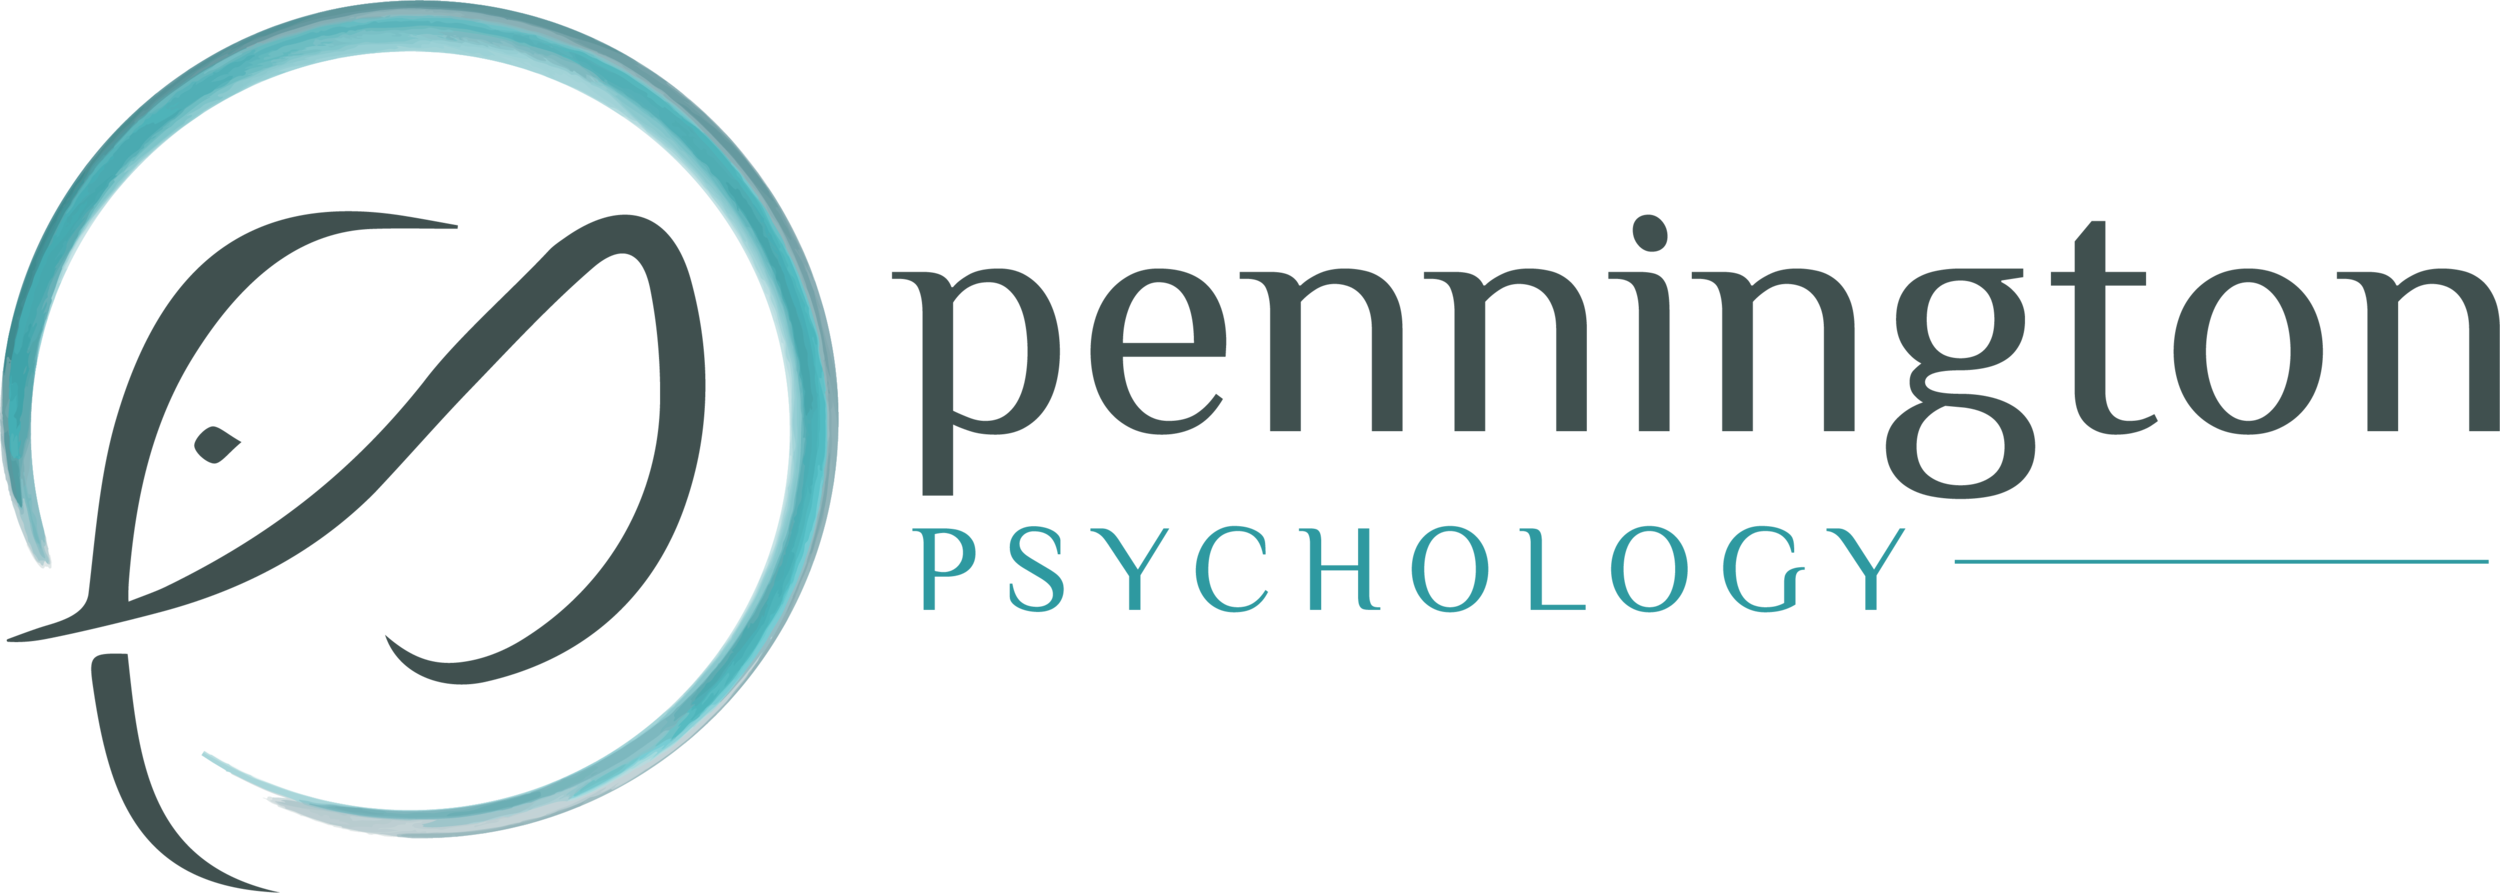 Pennington Psychology